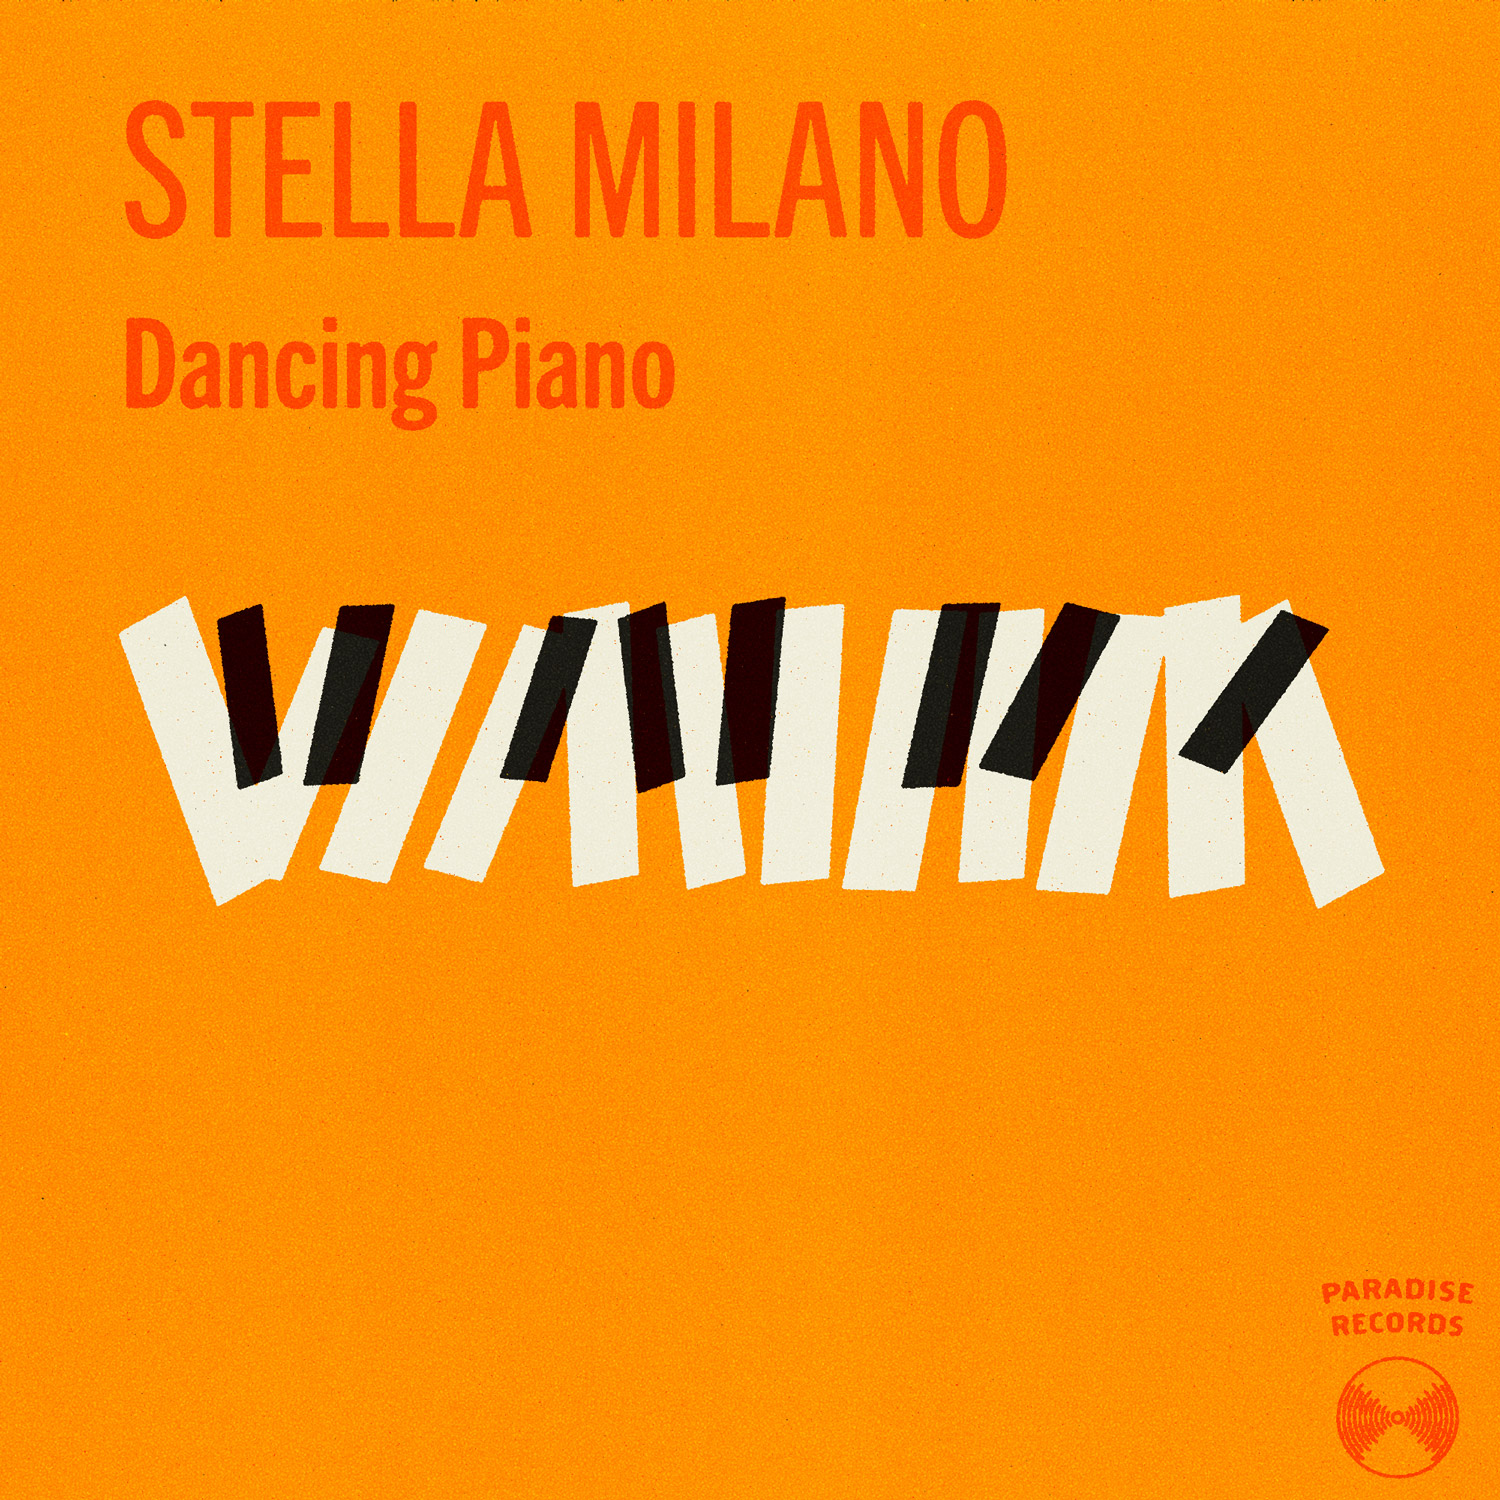 Stella Milano record cover illustration